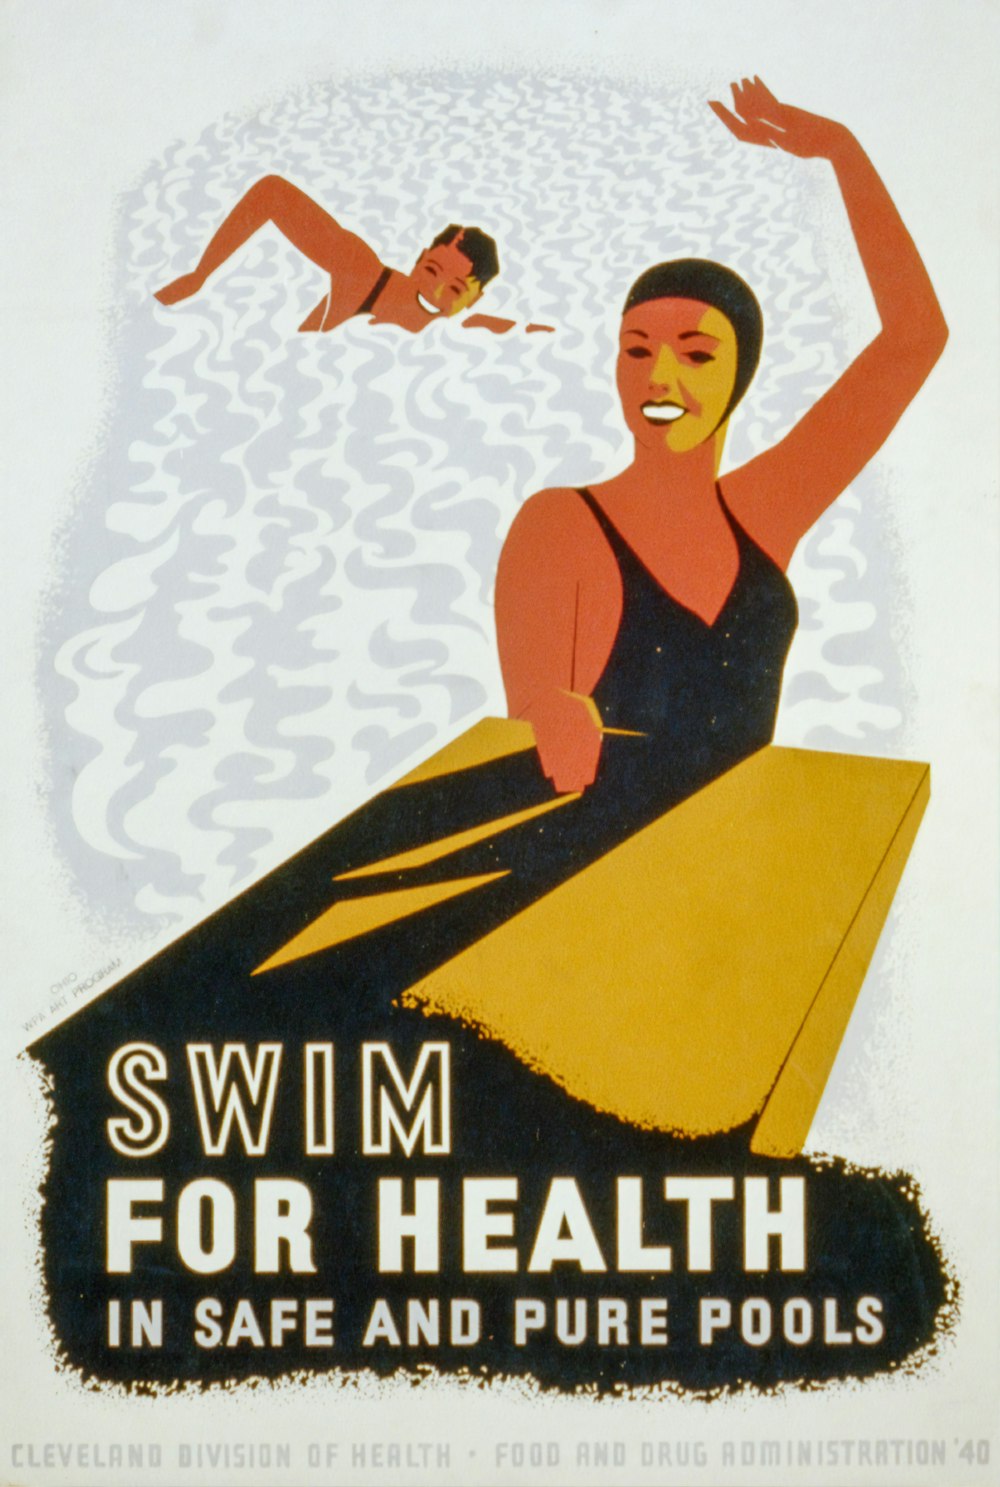  안전하고 순수한 수영장에서 건강을 위해 수영하십시오. WPA 포스터.